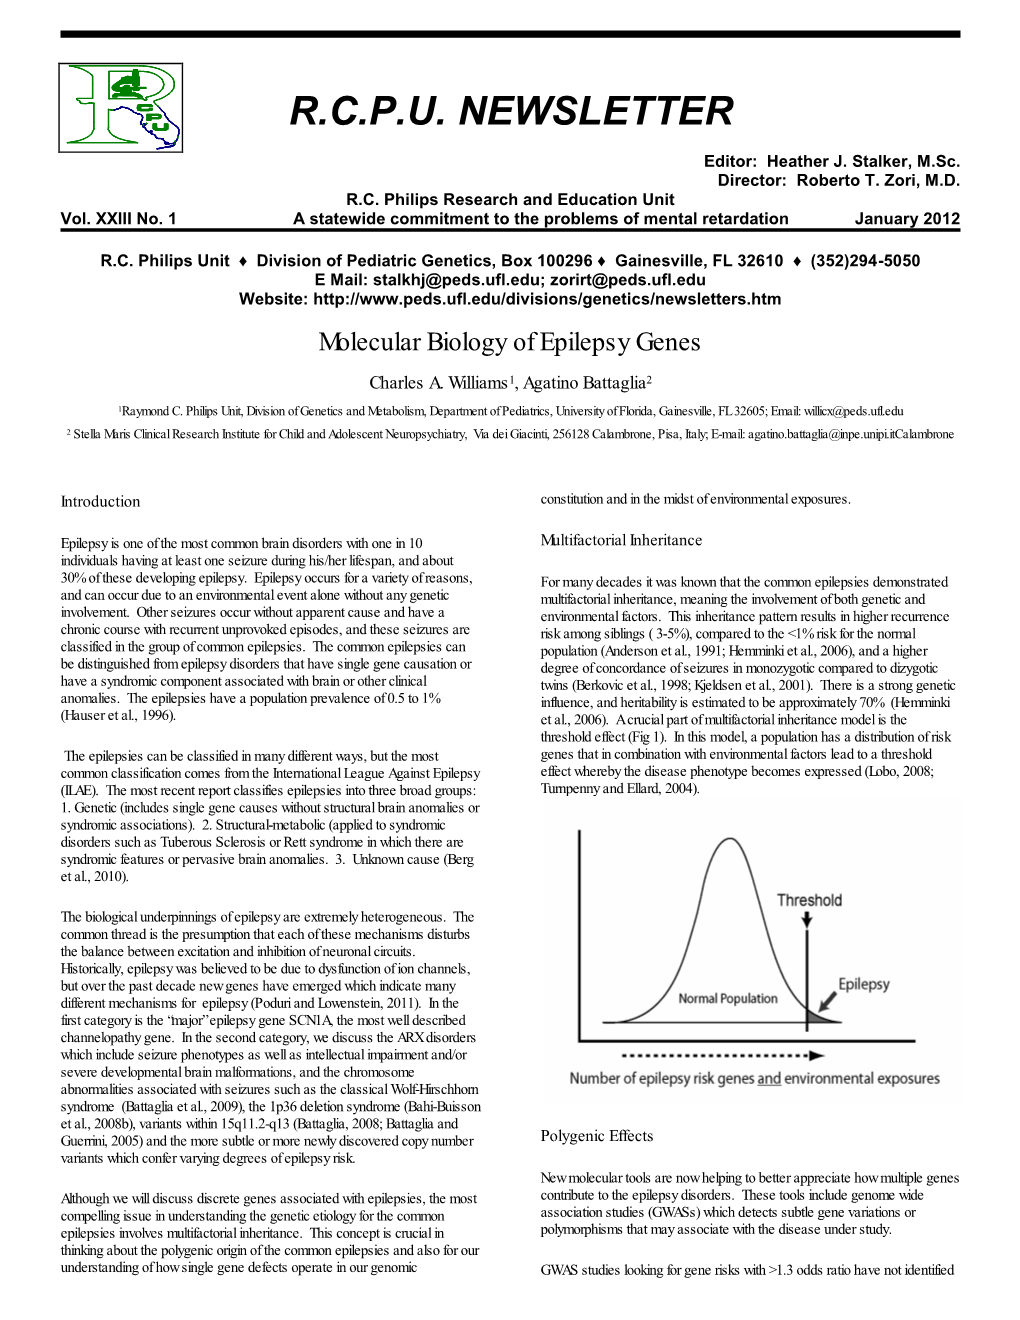 Molecular Biology of Epilepsy Genes Charles A